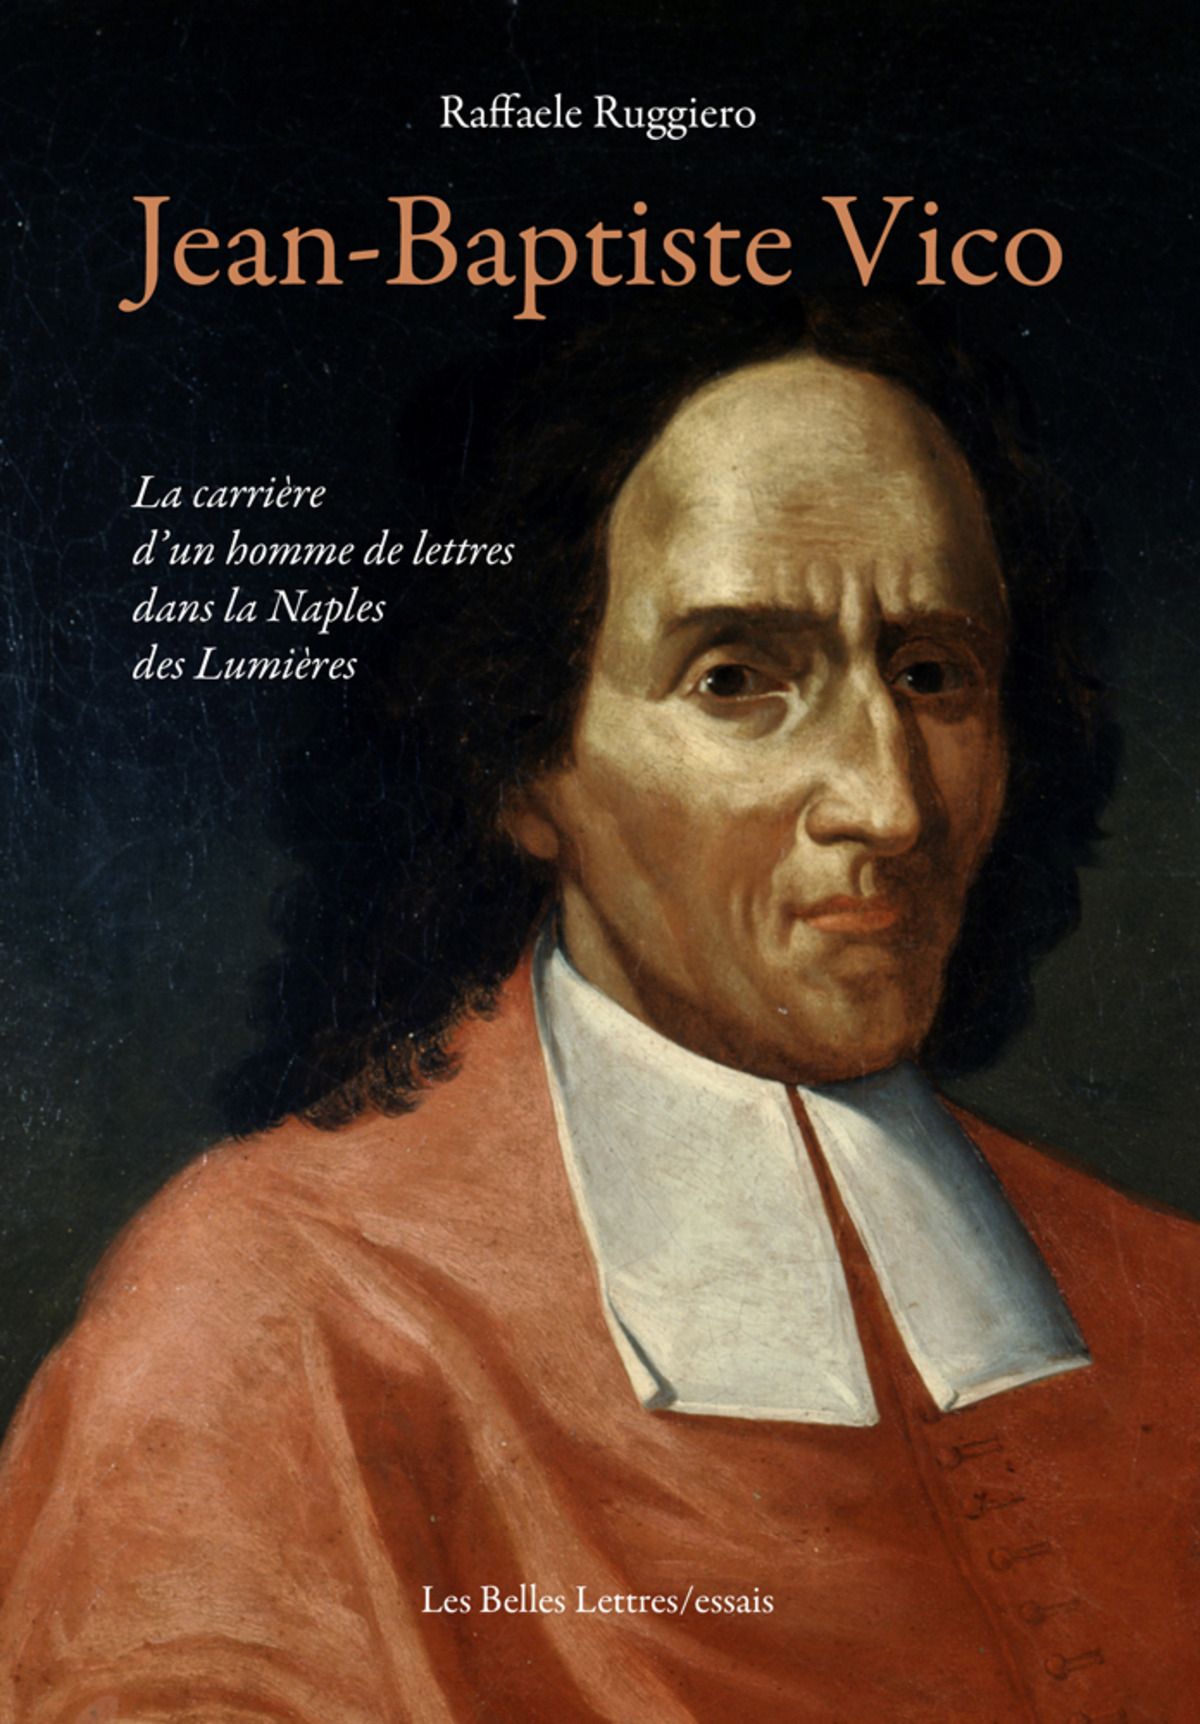 Raffaele Ruggiero, Jean-Baptiste Vico. La carrière d’un homme de lettres dans la Naples des Lumières